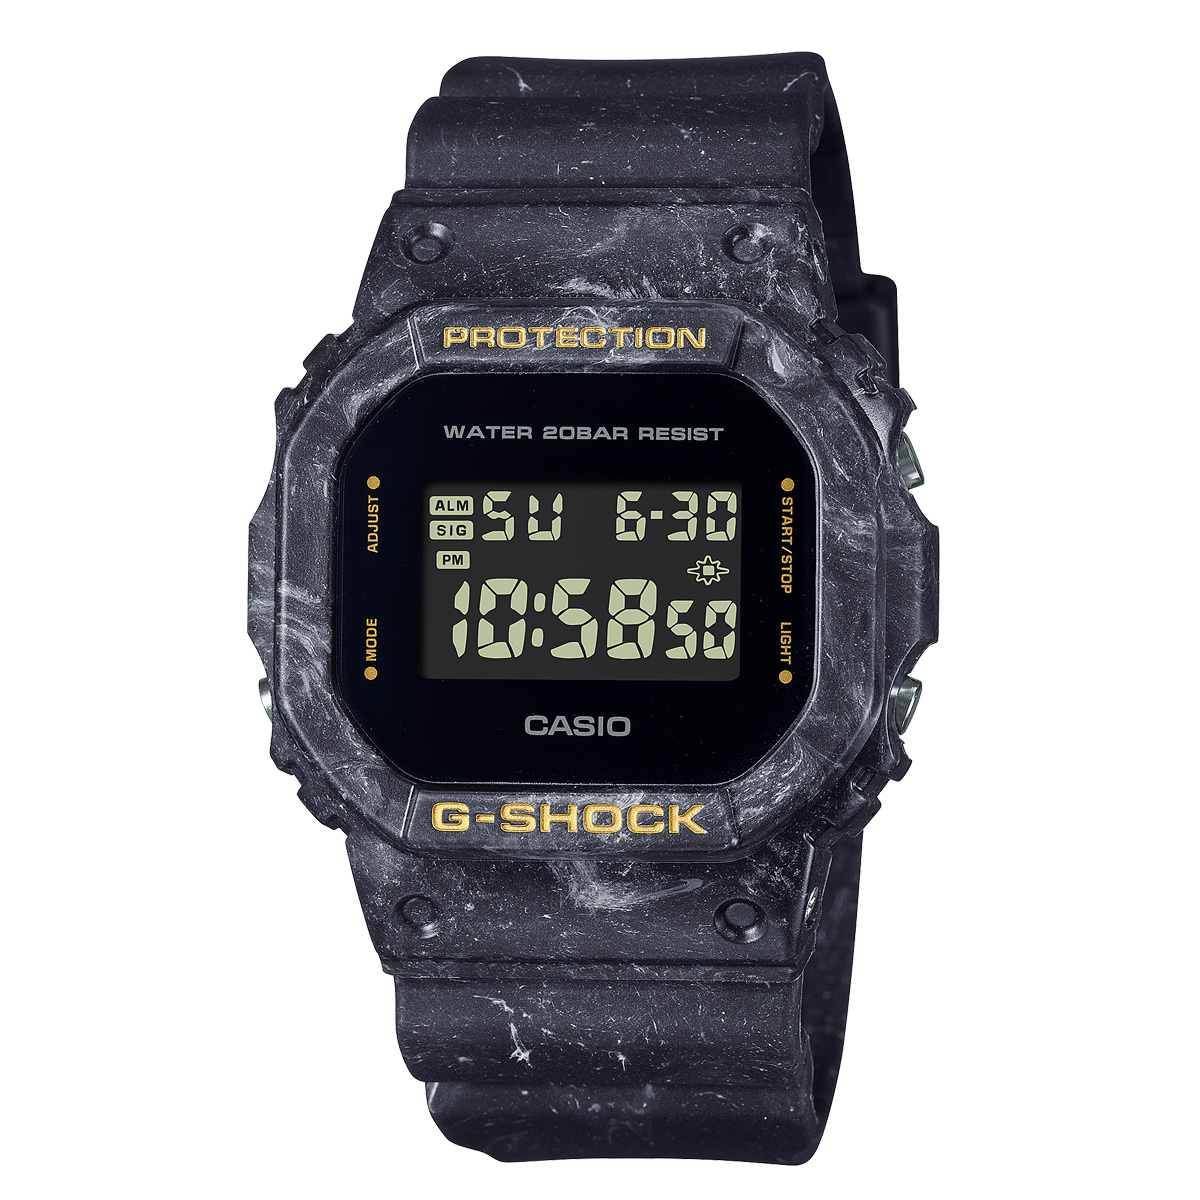 G-SHOCK ジーショック CASIO カシオ DW-5600WS-1 5600 スピードモデル デジタル 腕時計 反転液晶 ボーイズサイズ メンズ  レディース